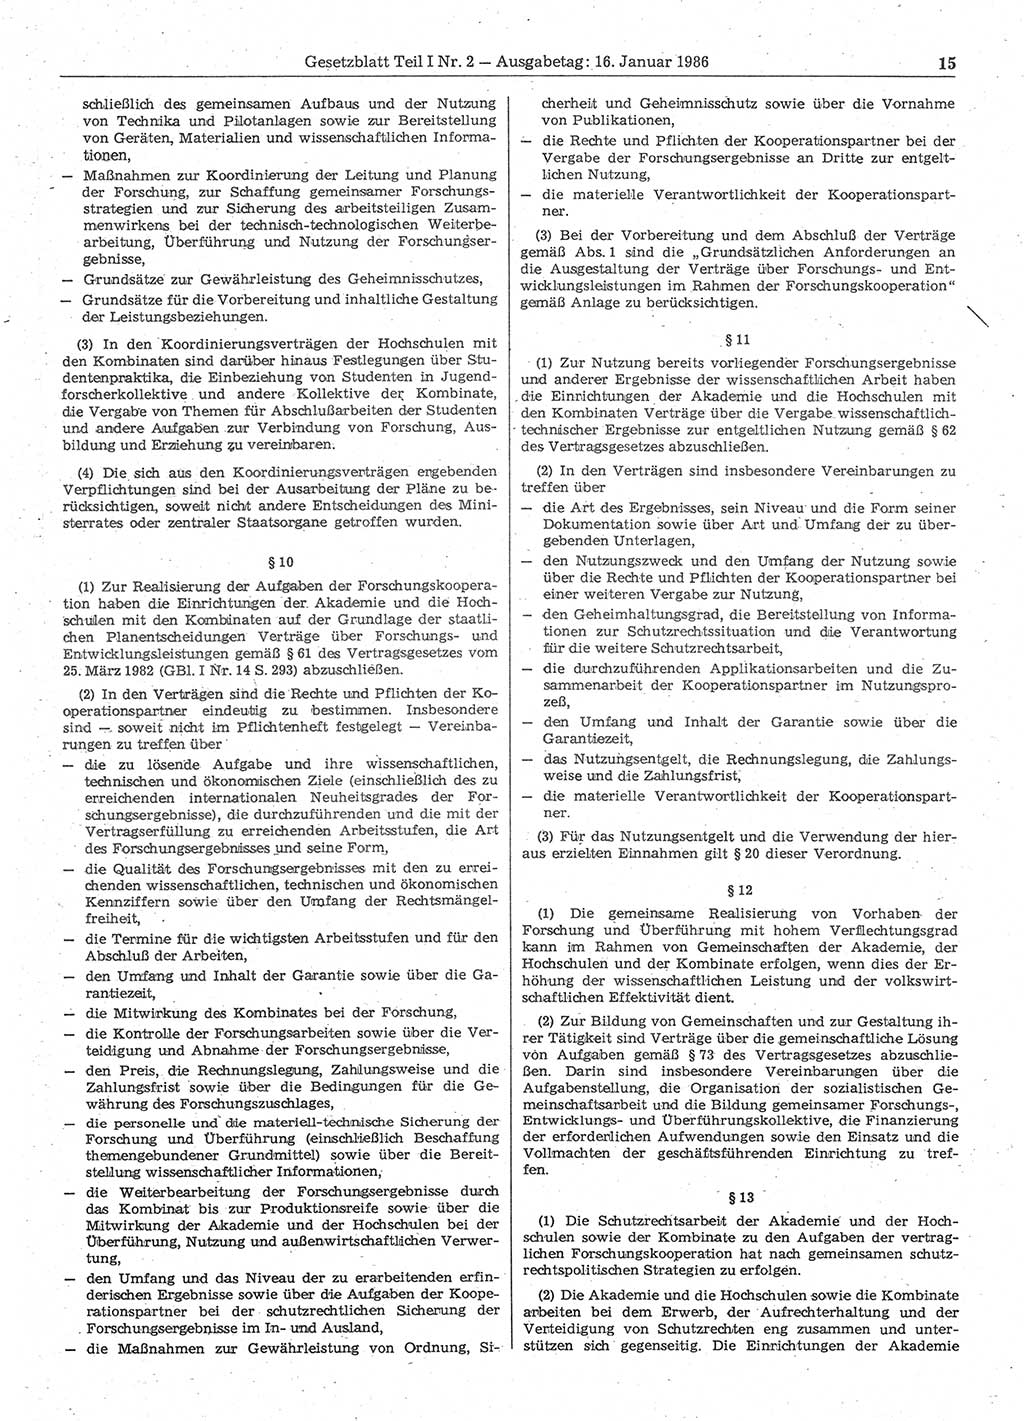 Gesetzblatt (GBl.) der Deutschen Demokratischen Republik (DDR) Teil Ⅰ 1986, Seite 15 (GBl. DDR Ⅰ 1986, S. 15)